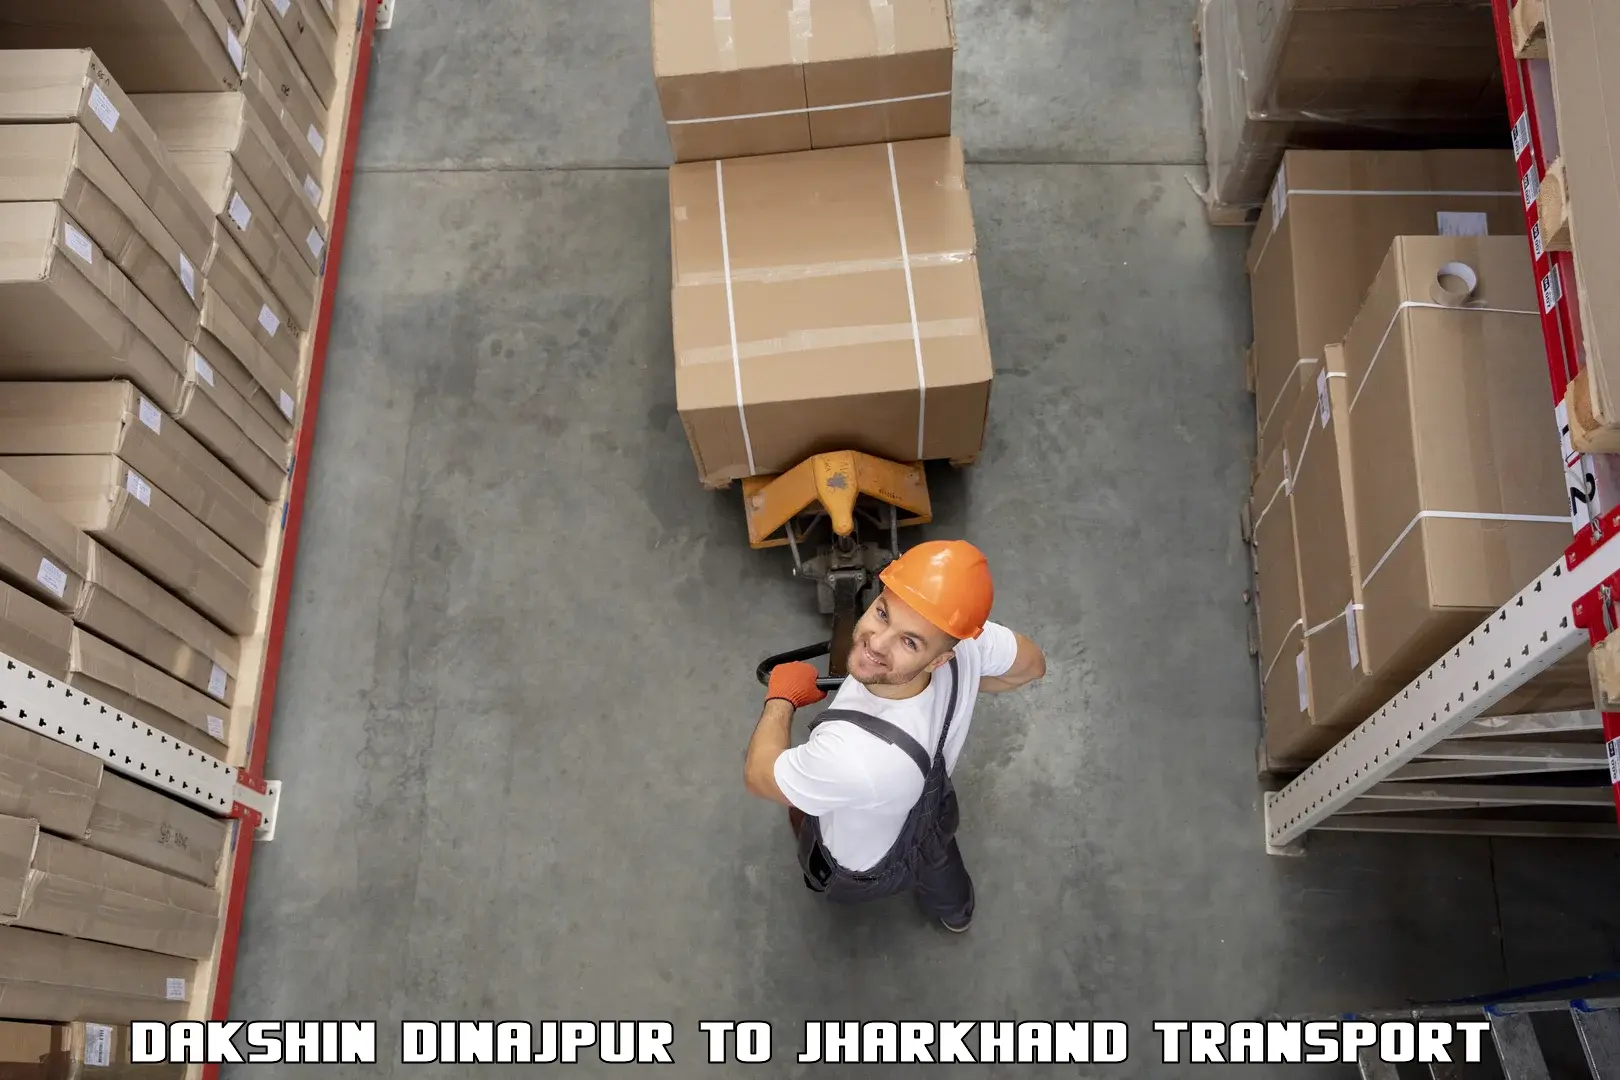 Online transport service Dakshin Dinajpur to Garhwa